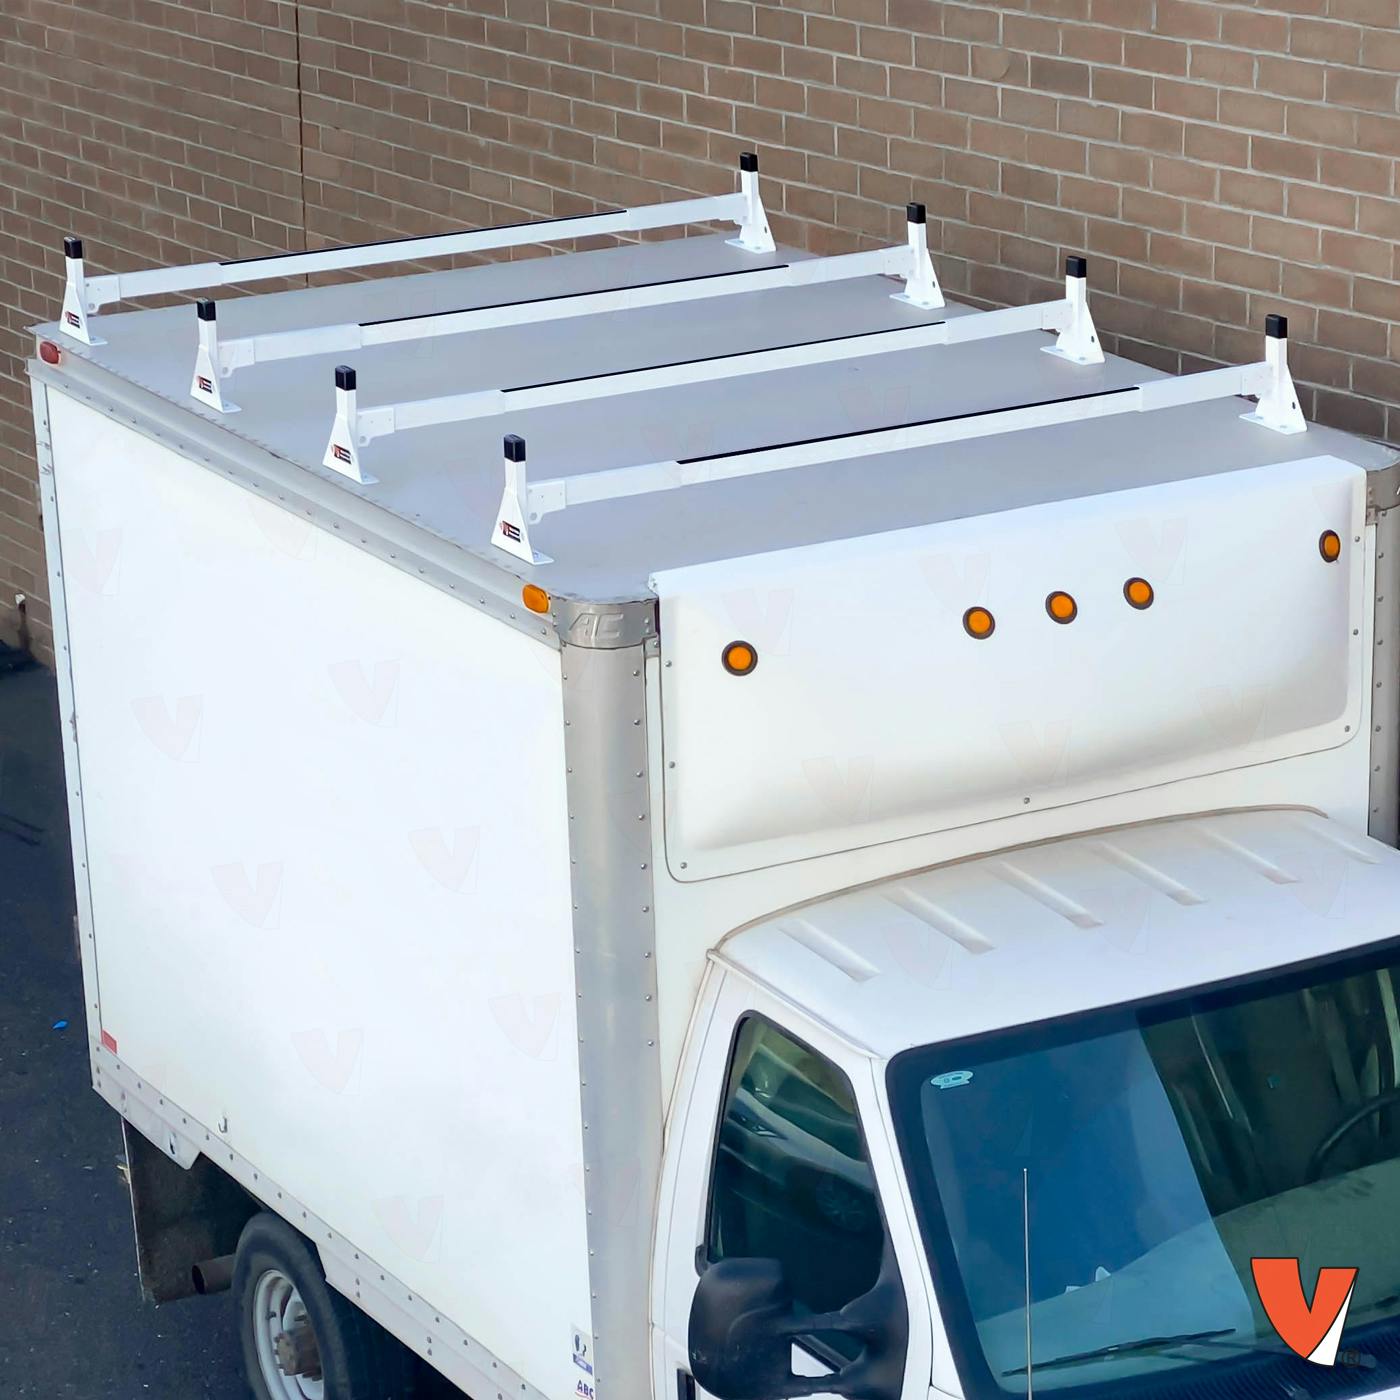 Vantech H1 Box Truck Aluminum Rack System - Top Mount 6